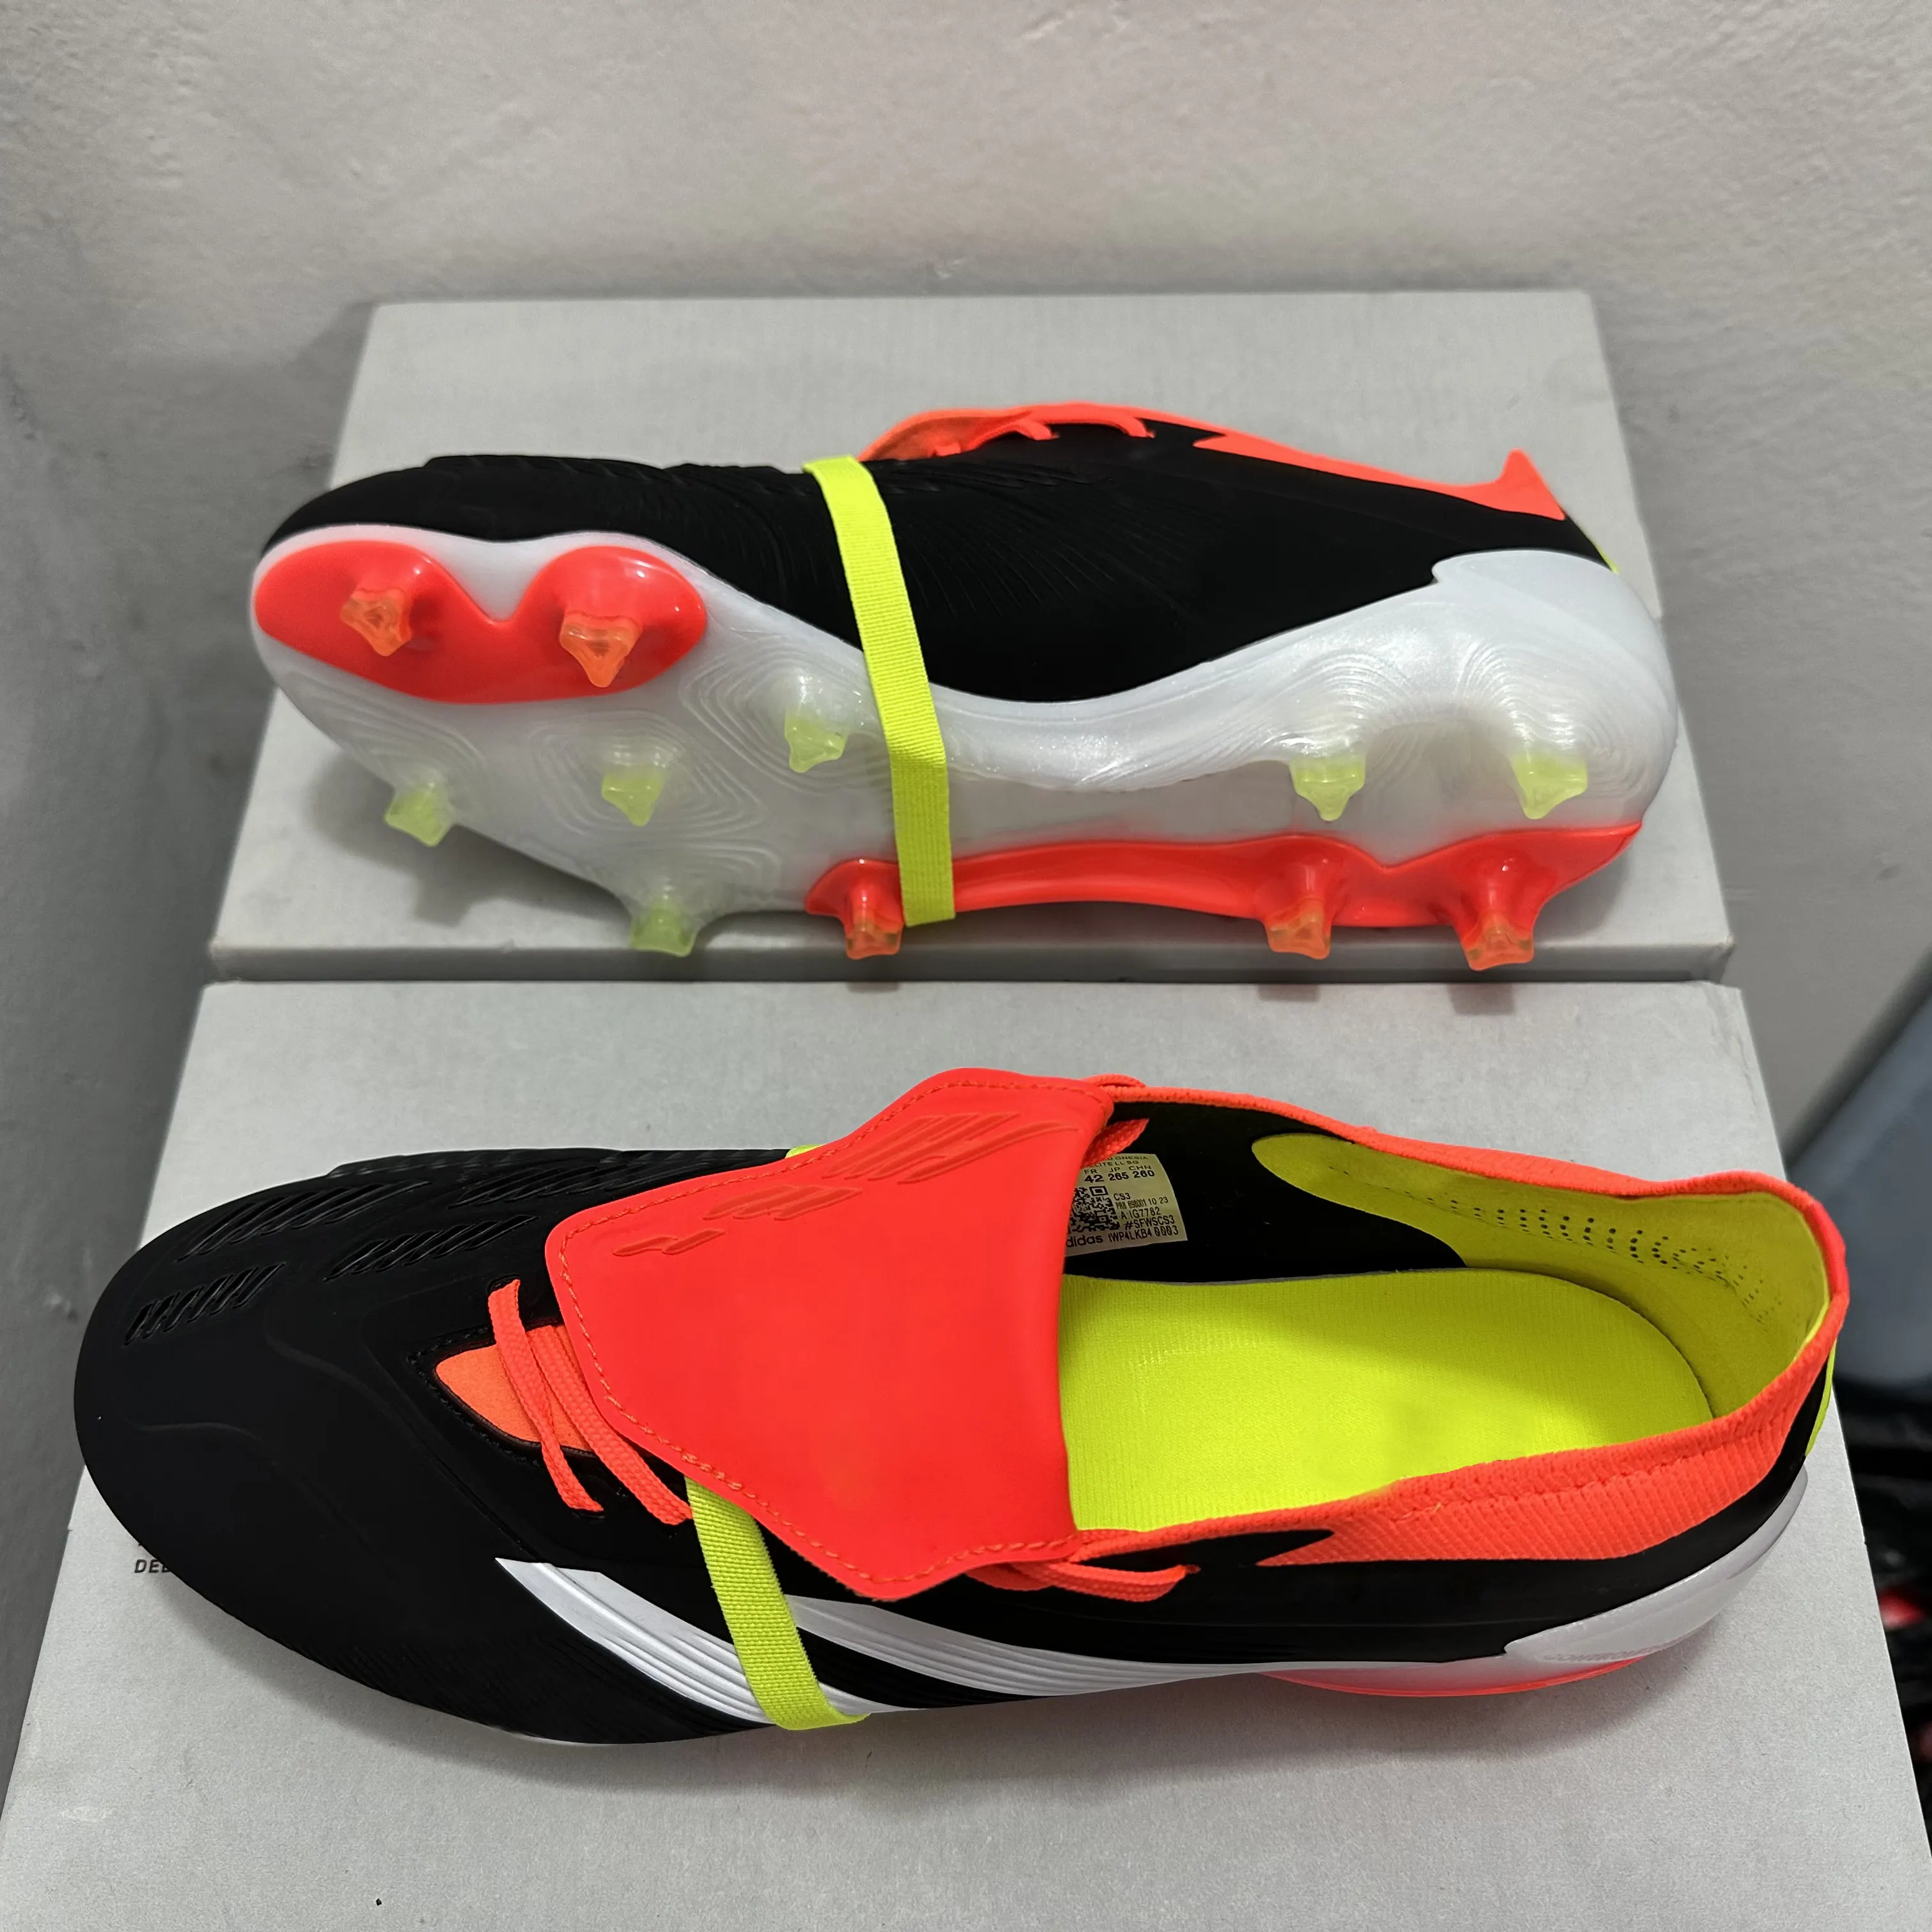 Meilleures chaussures de football tendance populaires chaussures de futsal imperméables tricotées pour hommes chaussures de football futsal personnalisées à la mode chaussures de football design